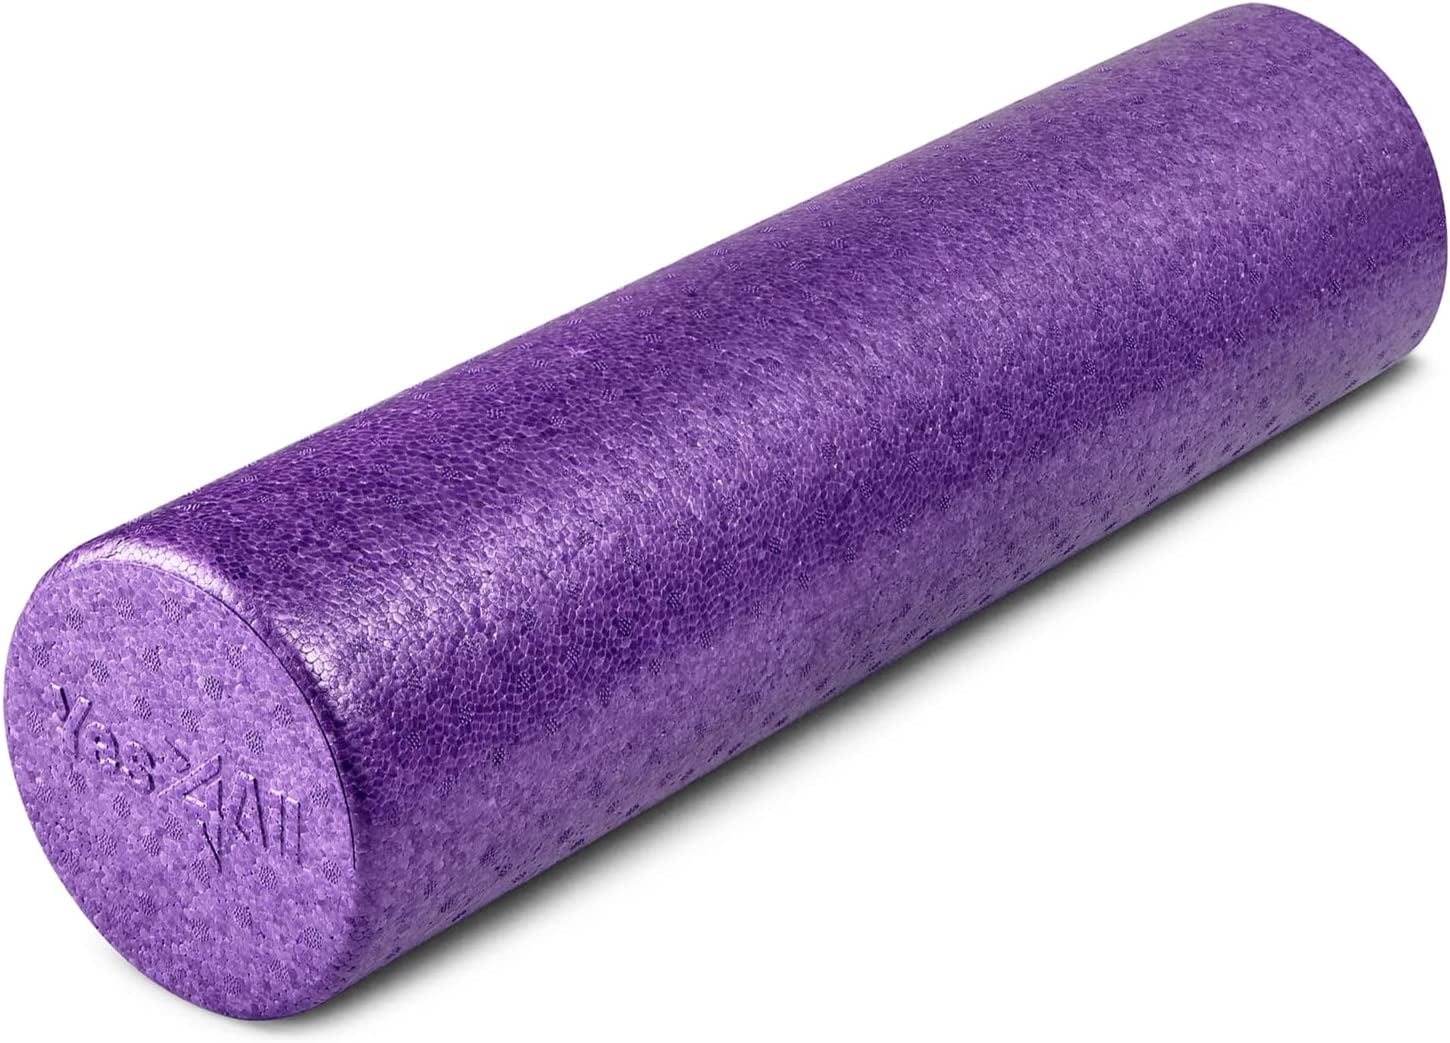 Foam Roller™ Deluxe - 36 inch (Purple)